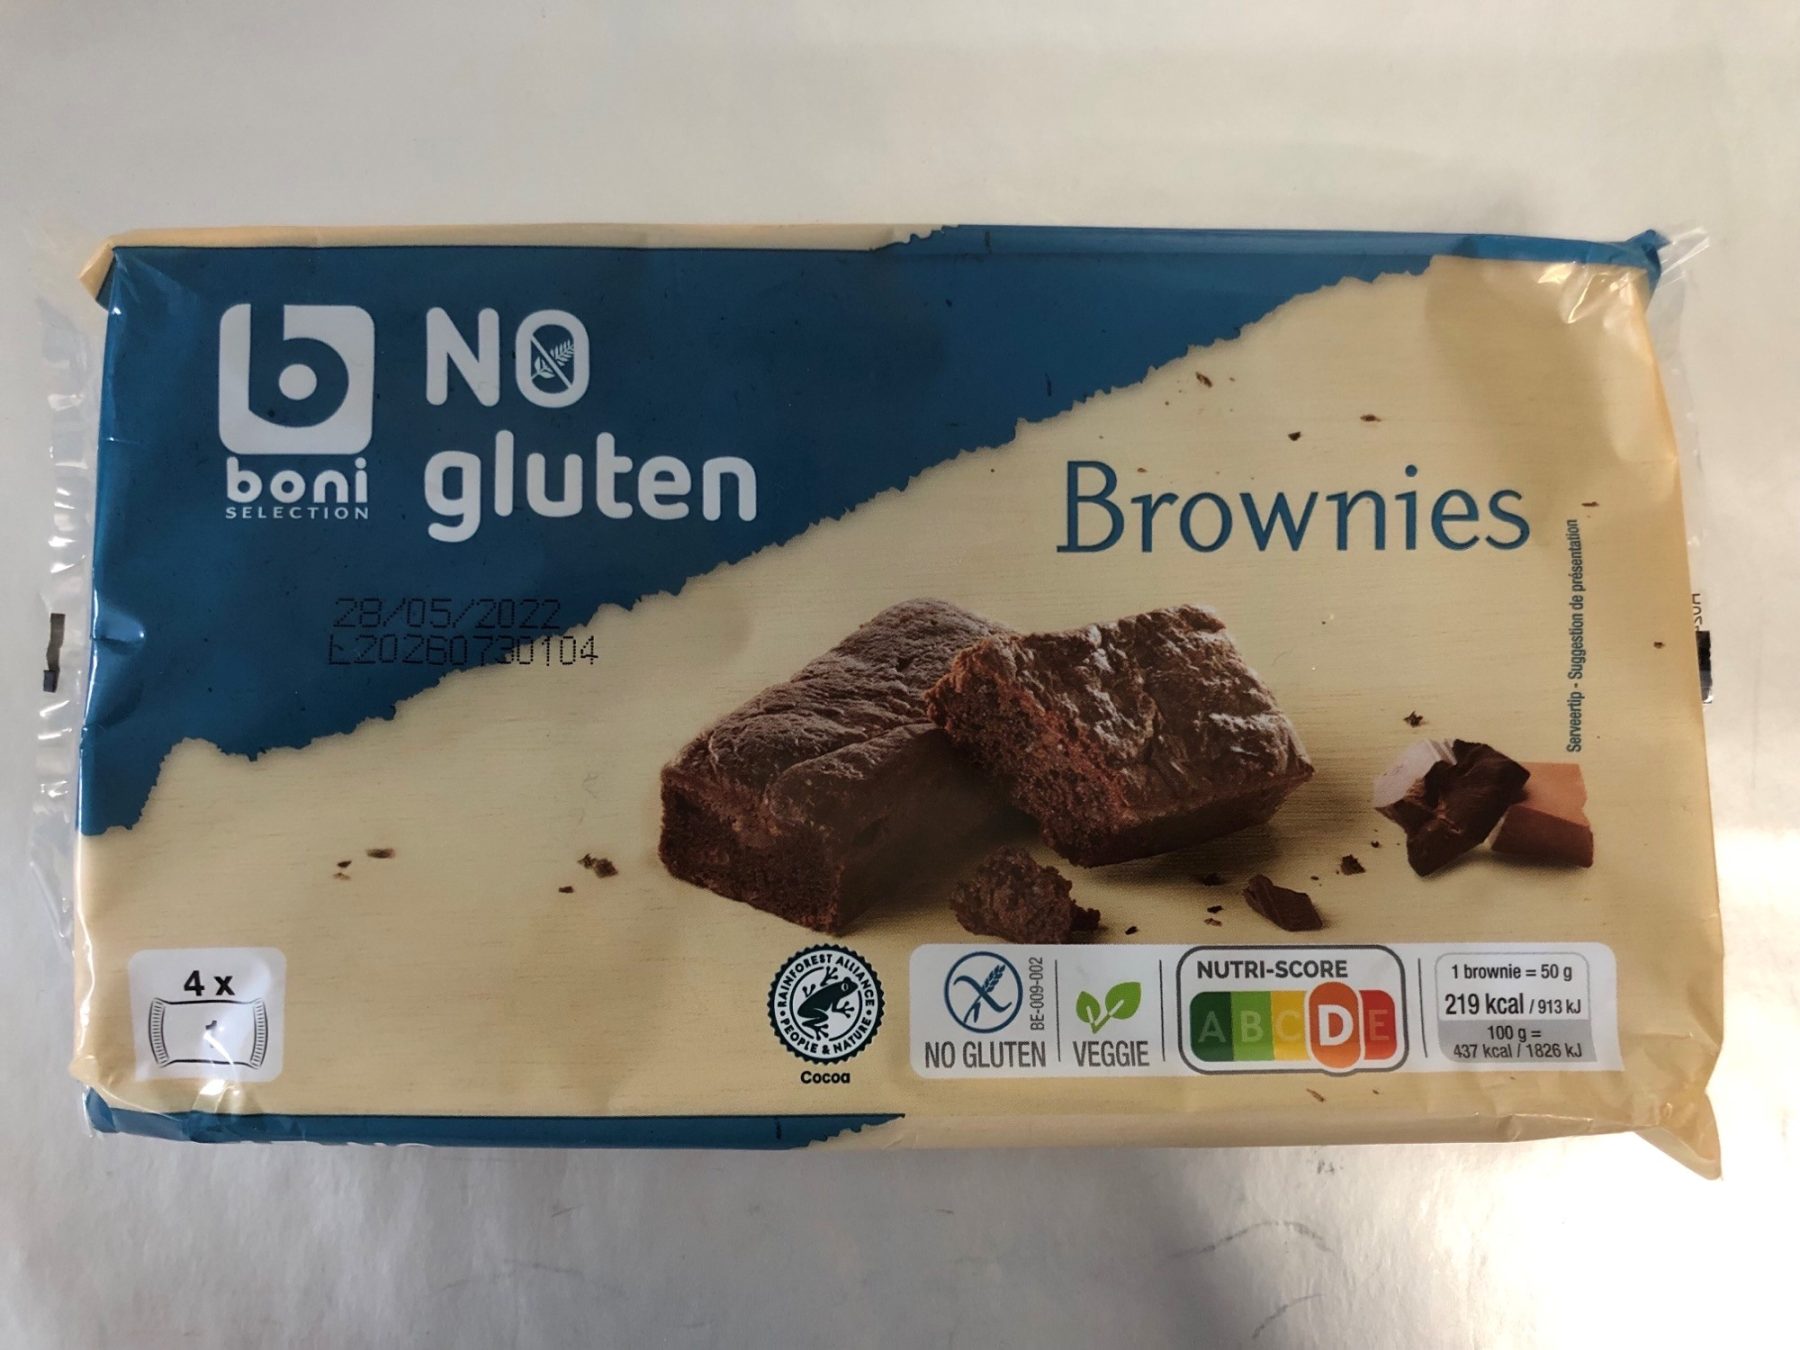 'No gluten' Belgian brownies